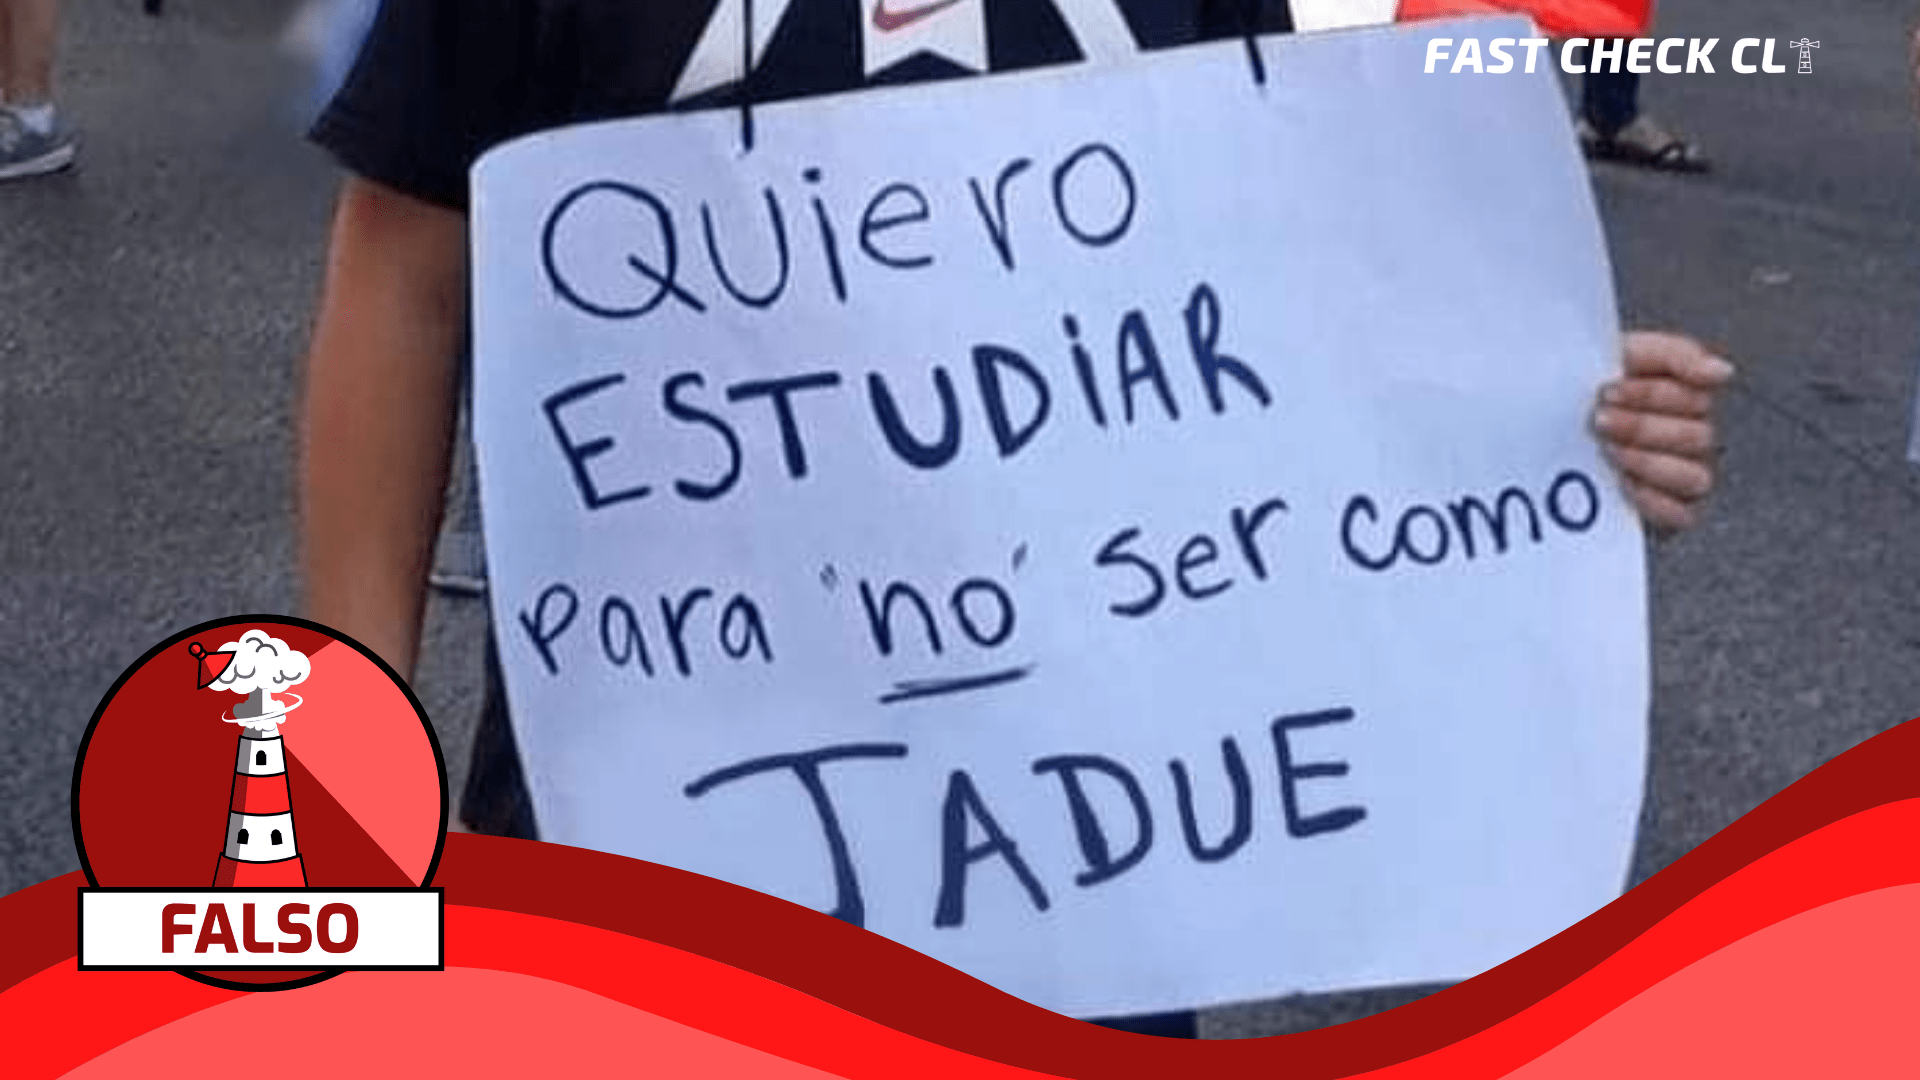 You are currently viewing (Imagen) Niño con cartel: “Quiero estudiar para no ser como Jadue”: #Falso